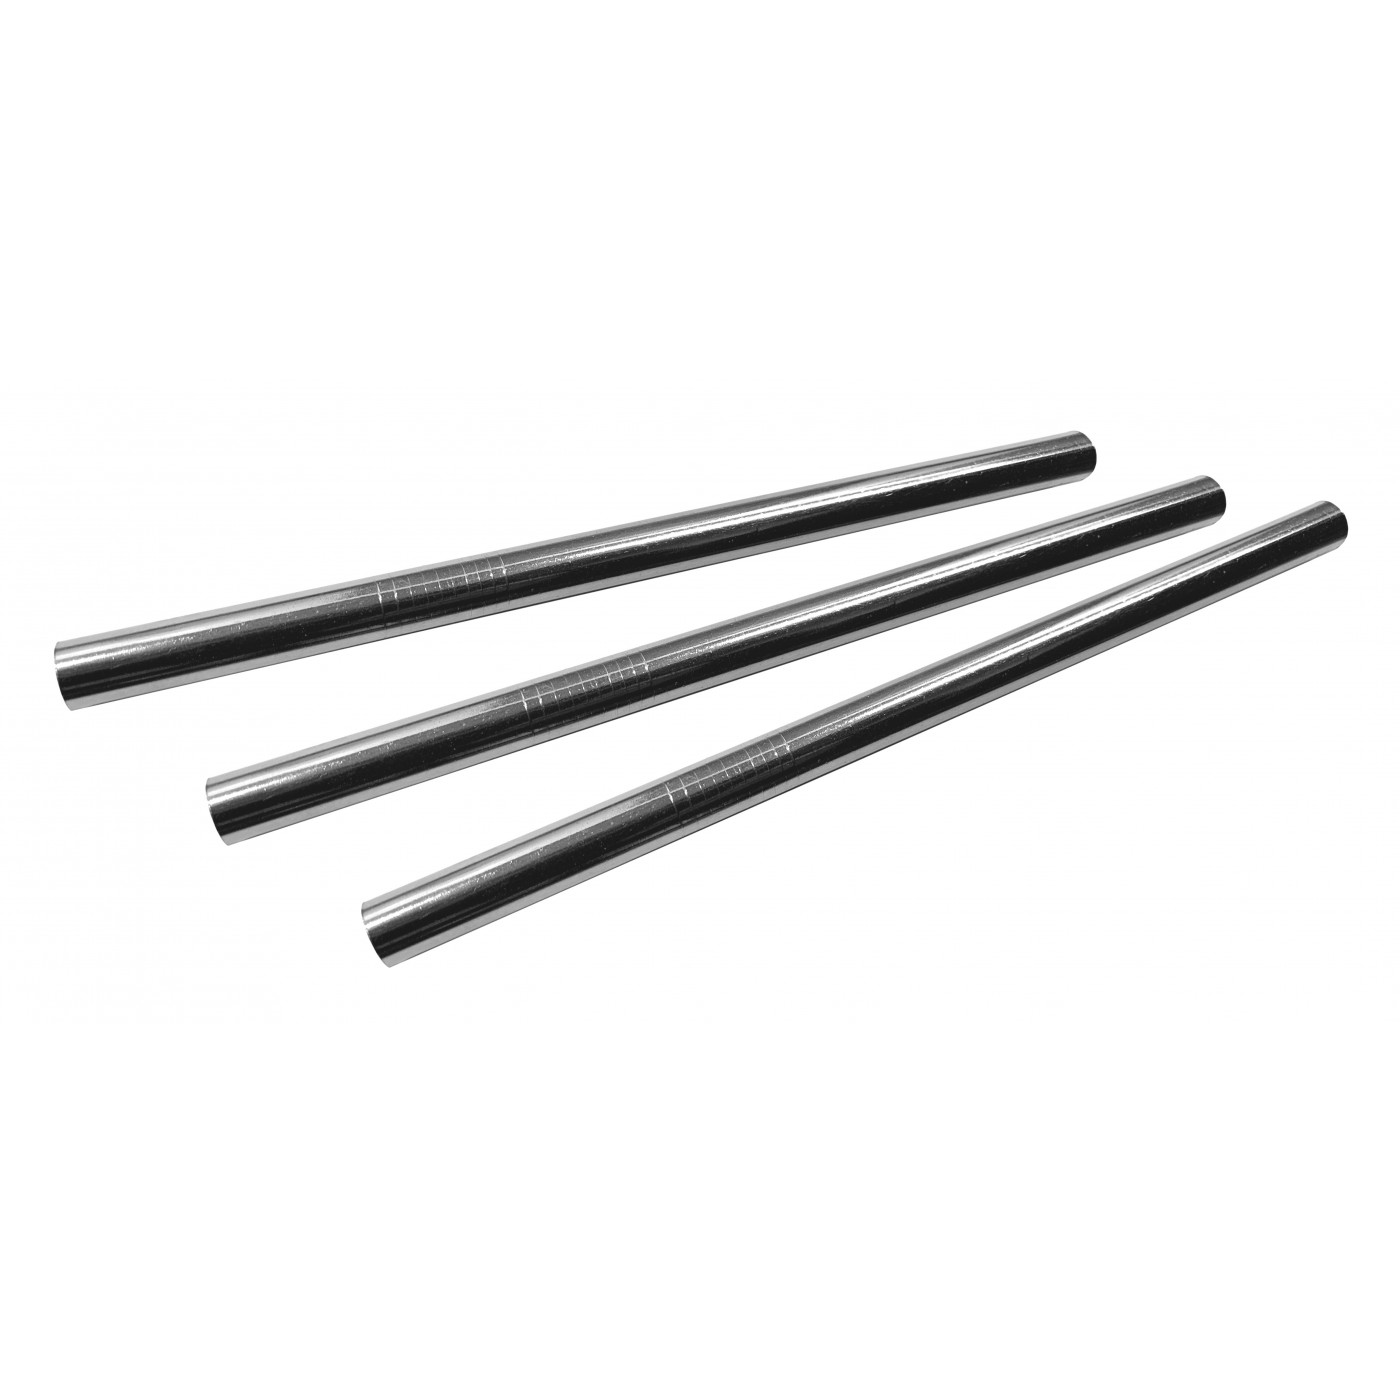 Conjunto de 10 tubos / canudos de aço inoxidável (12 mm de